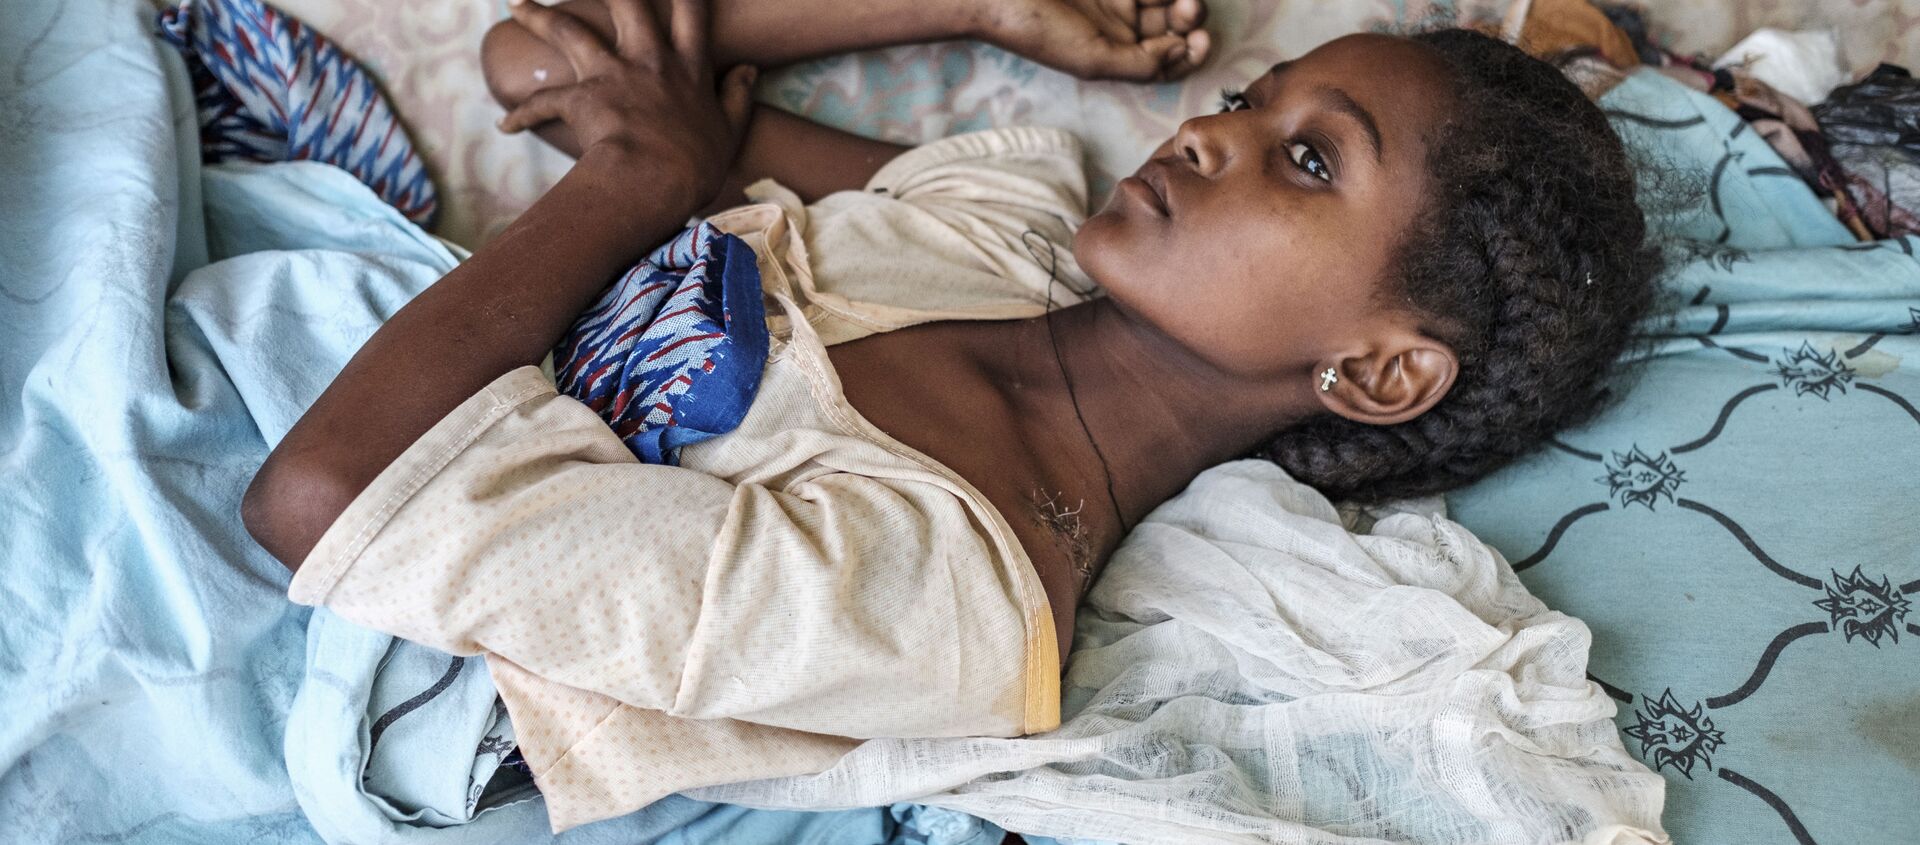 Девушка, пострадавшая в ходе боевых действий в Хумере, Эфиопия - Sputnik Mundo, 1920, 25.11.2020